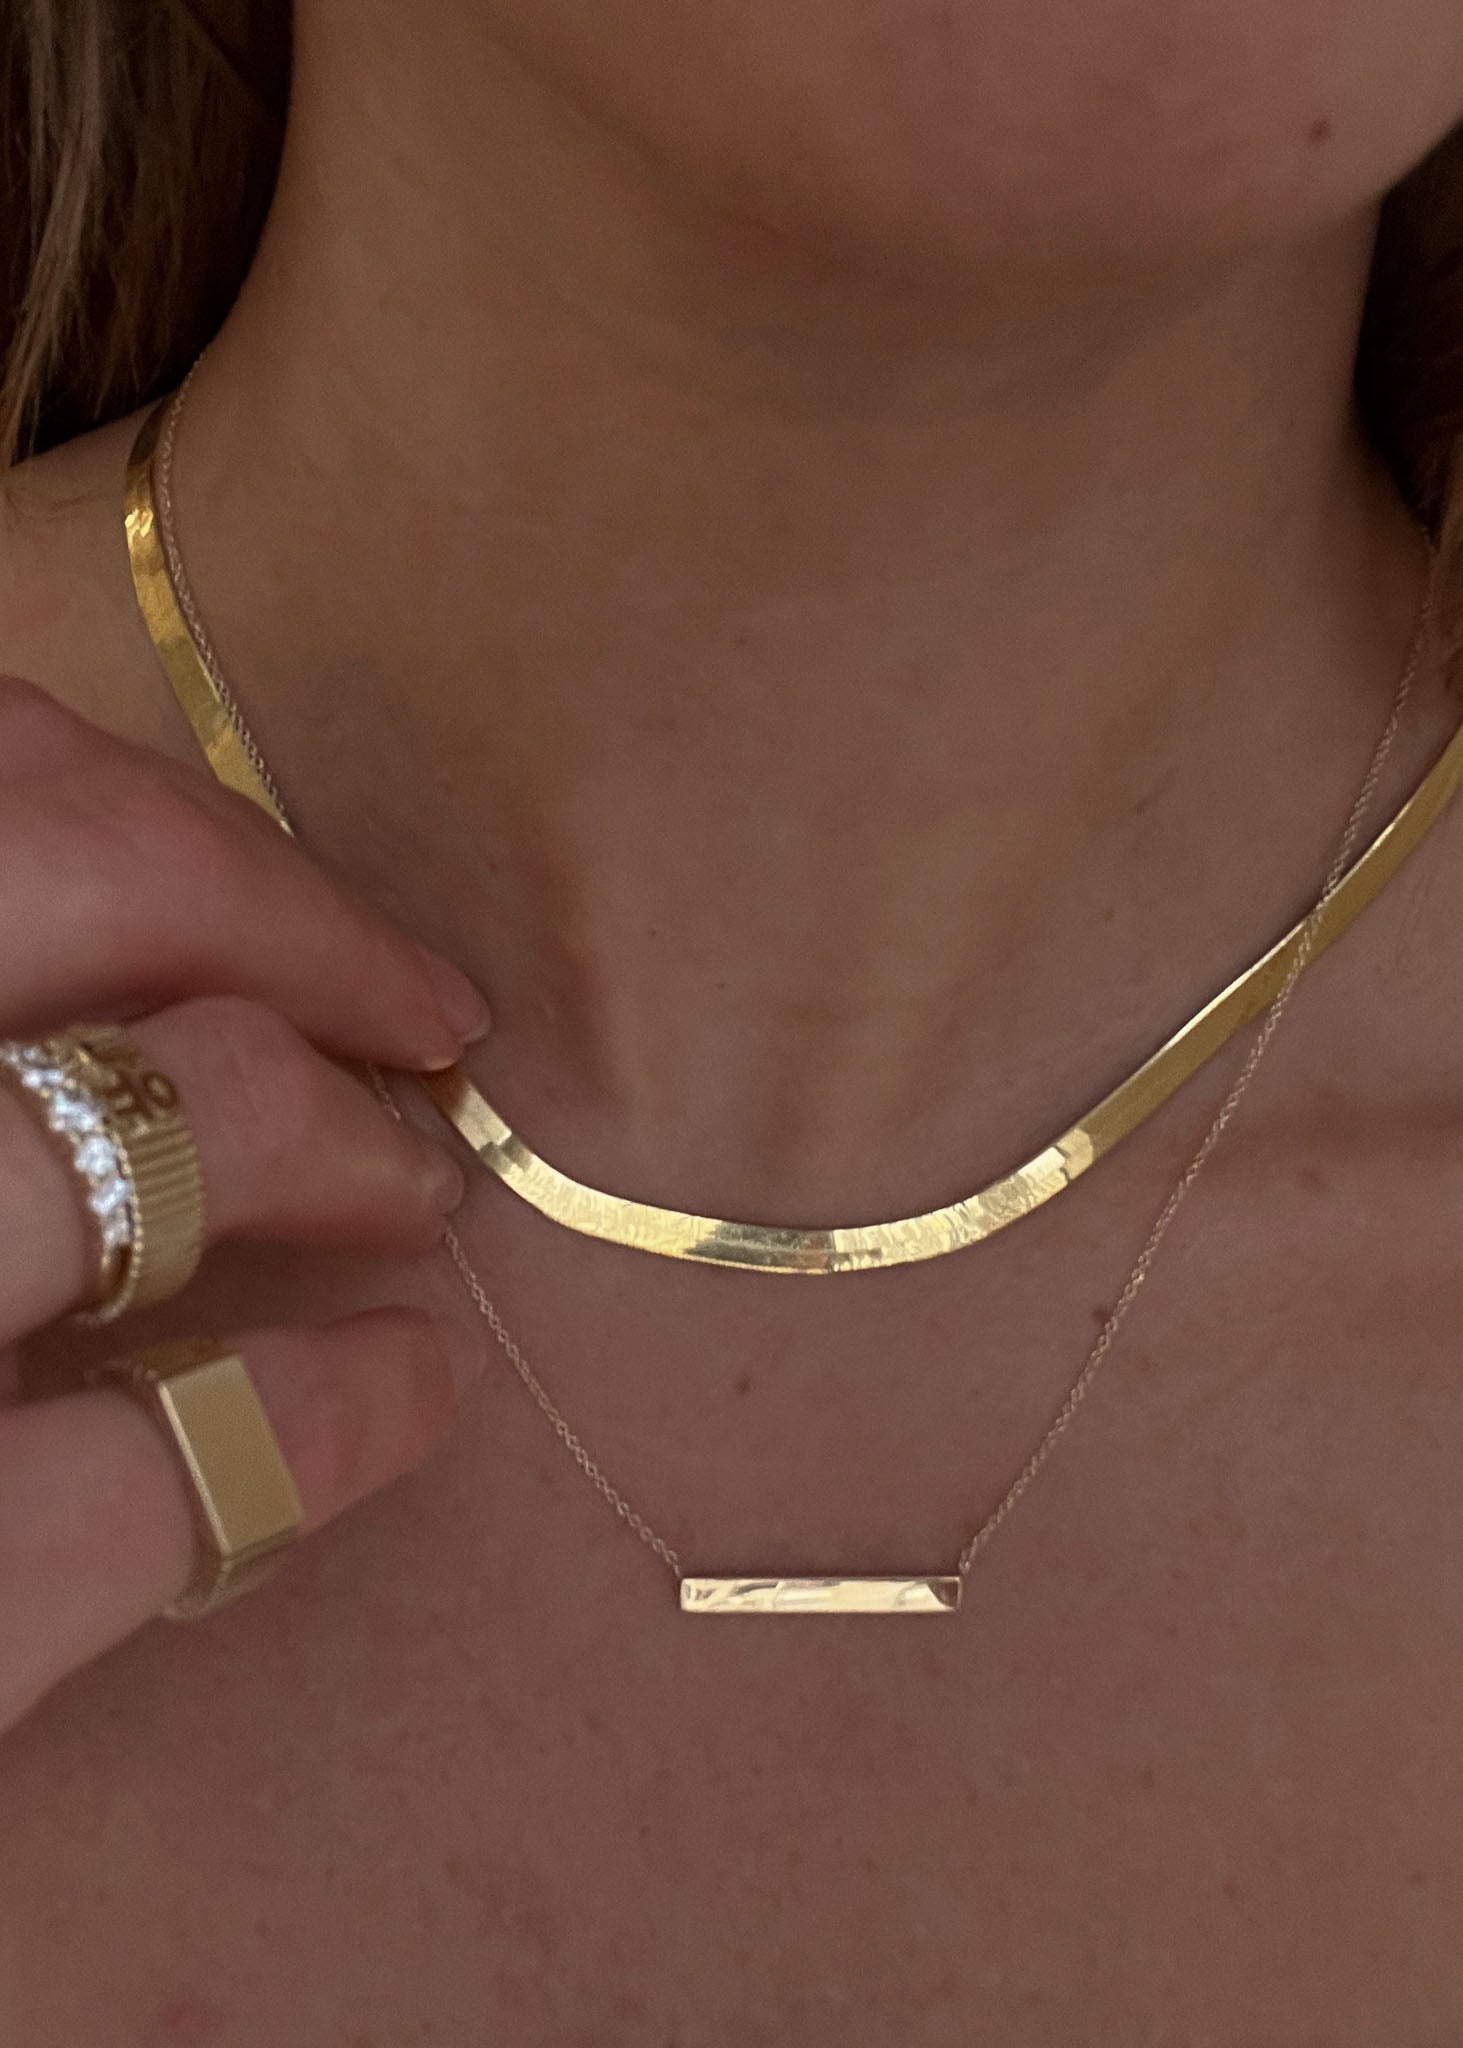 alt="Heritage Gold Bar Necklace"